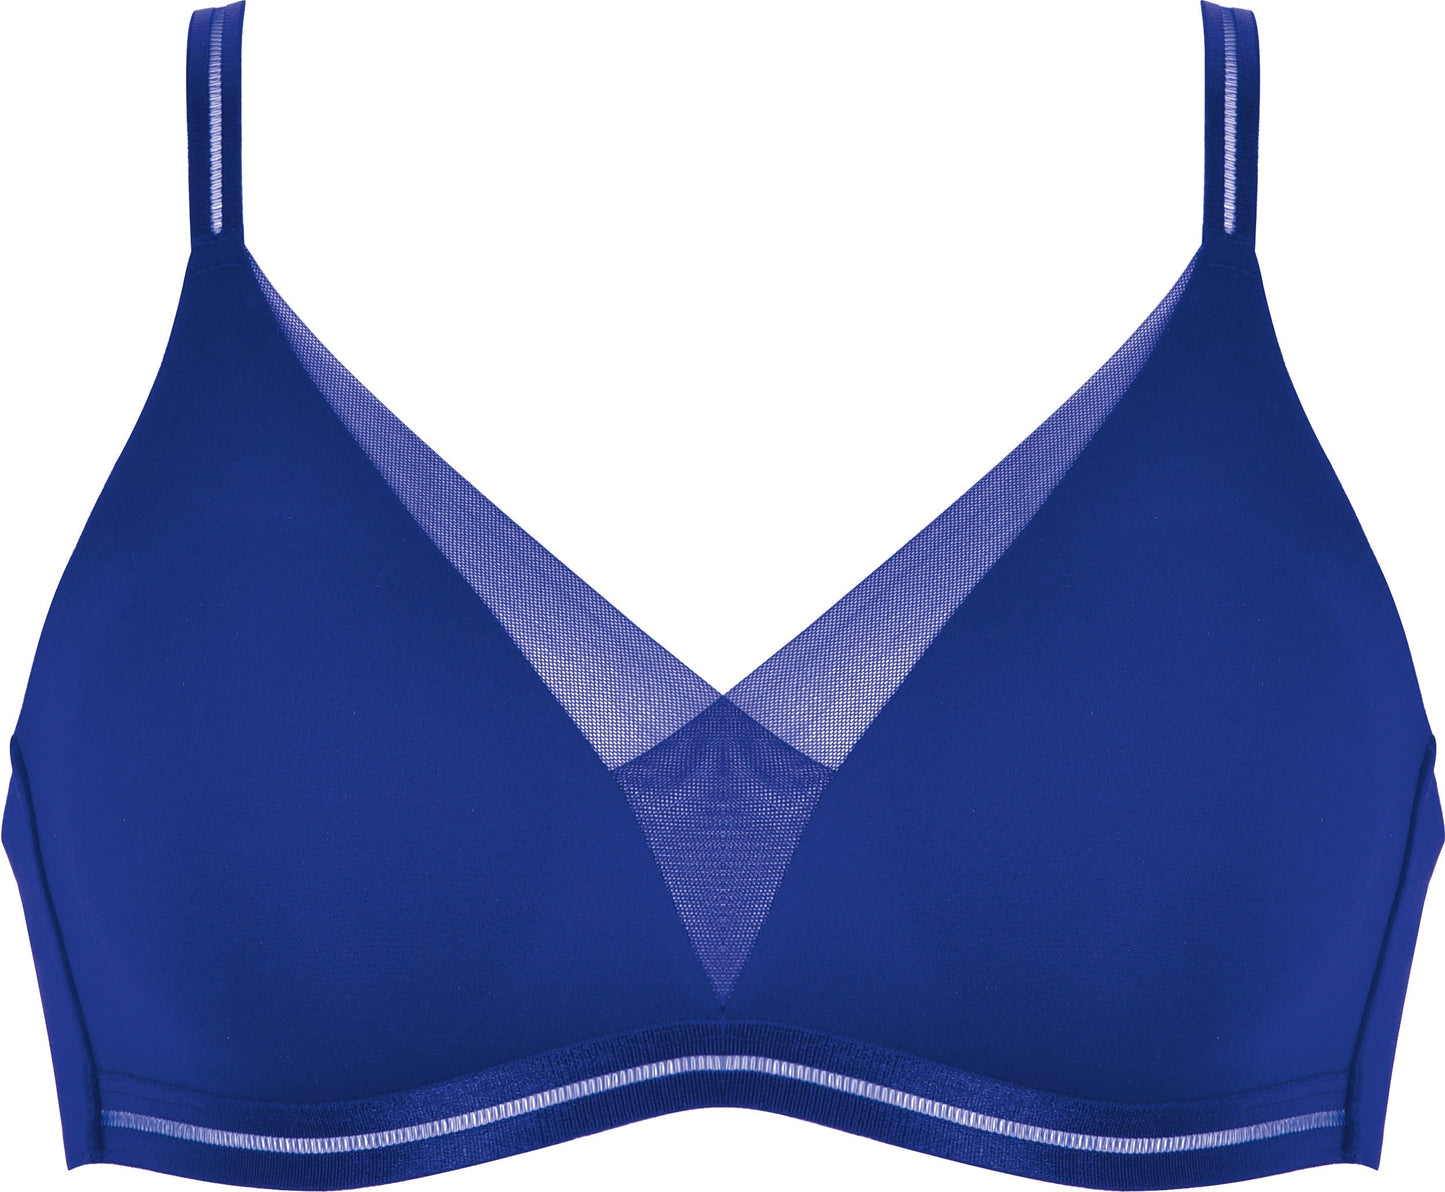 Voorzijde productafbeelding soft bh met mesh detail in de kleur indigo van het merk Naturana